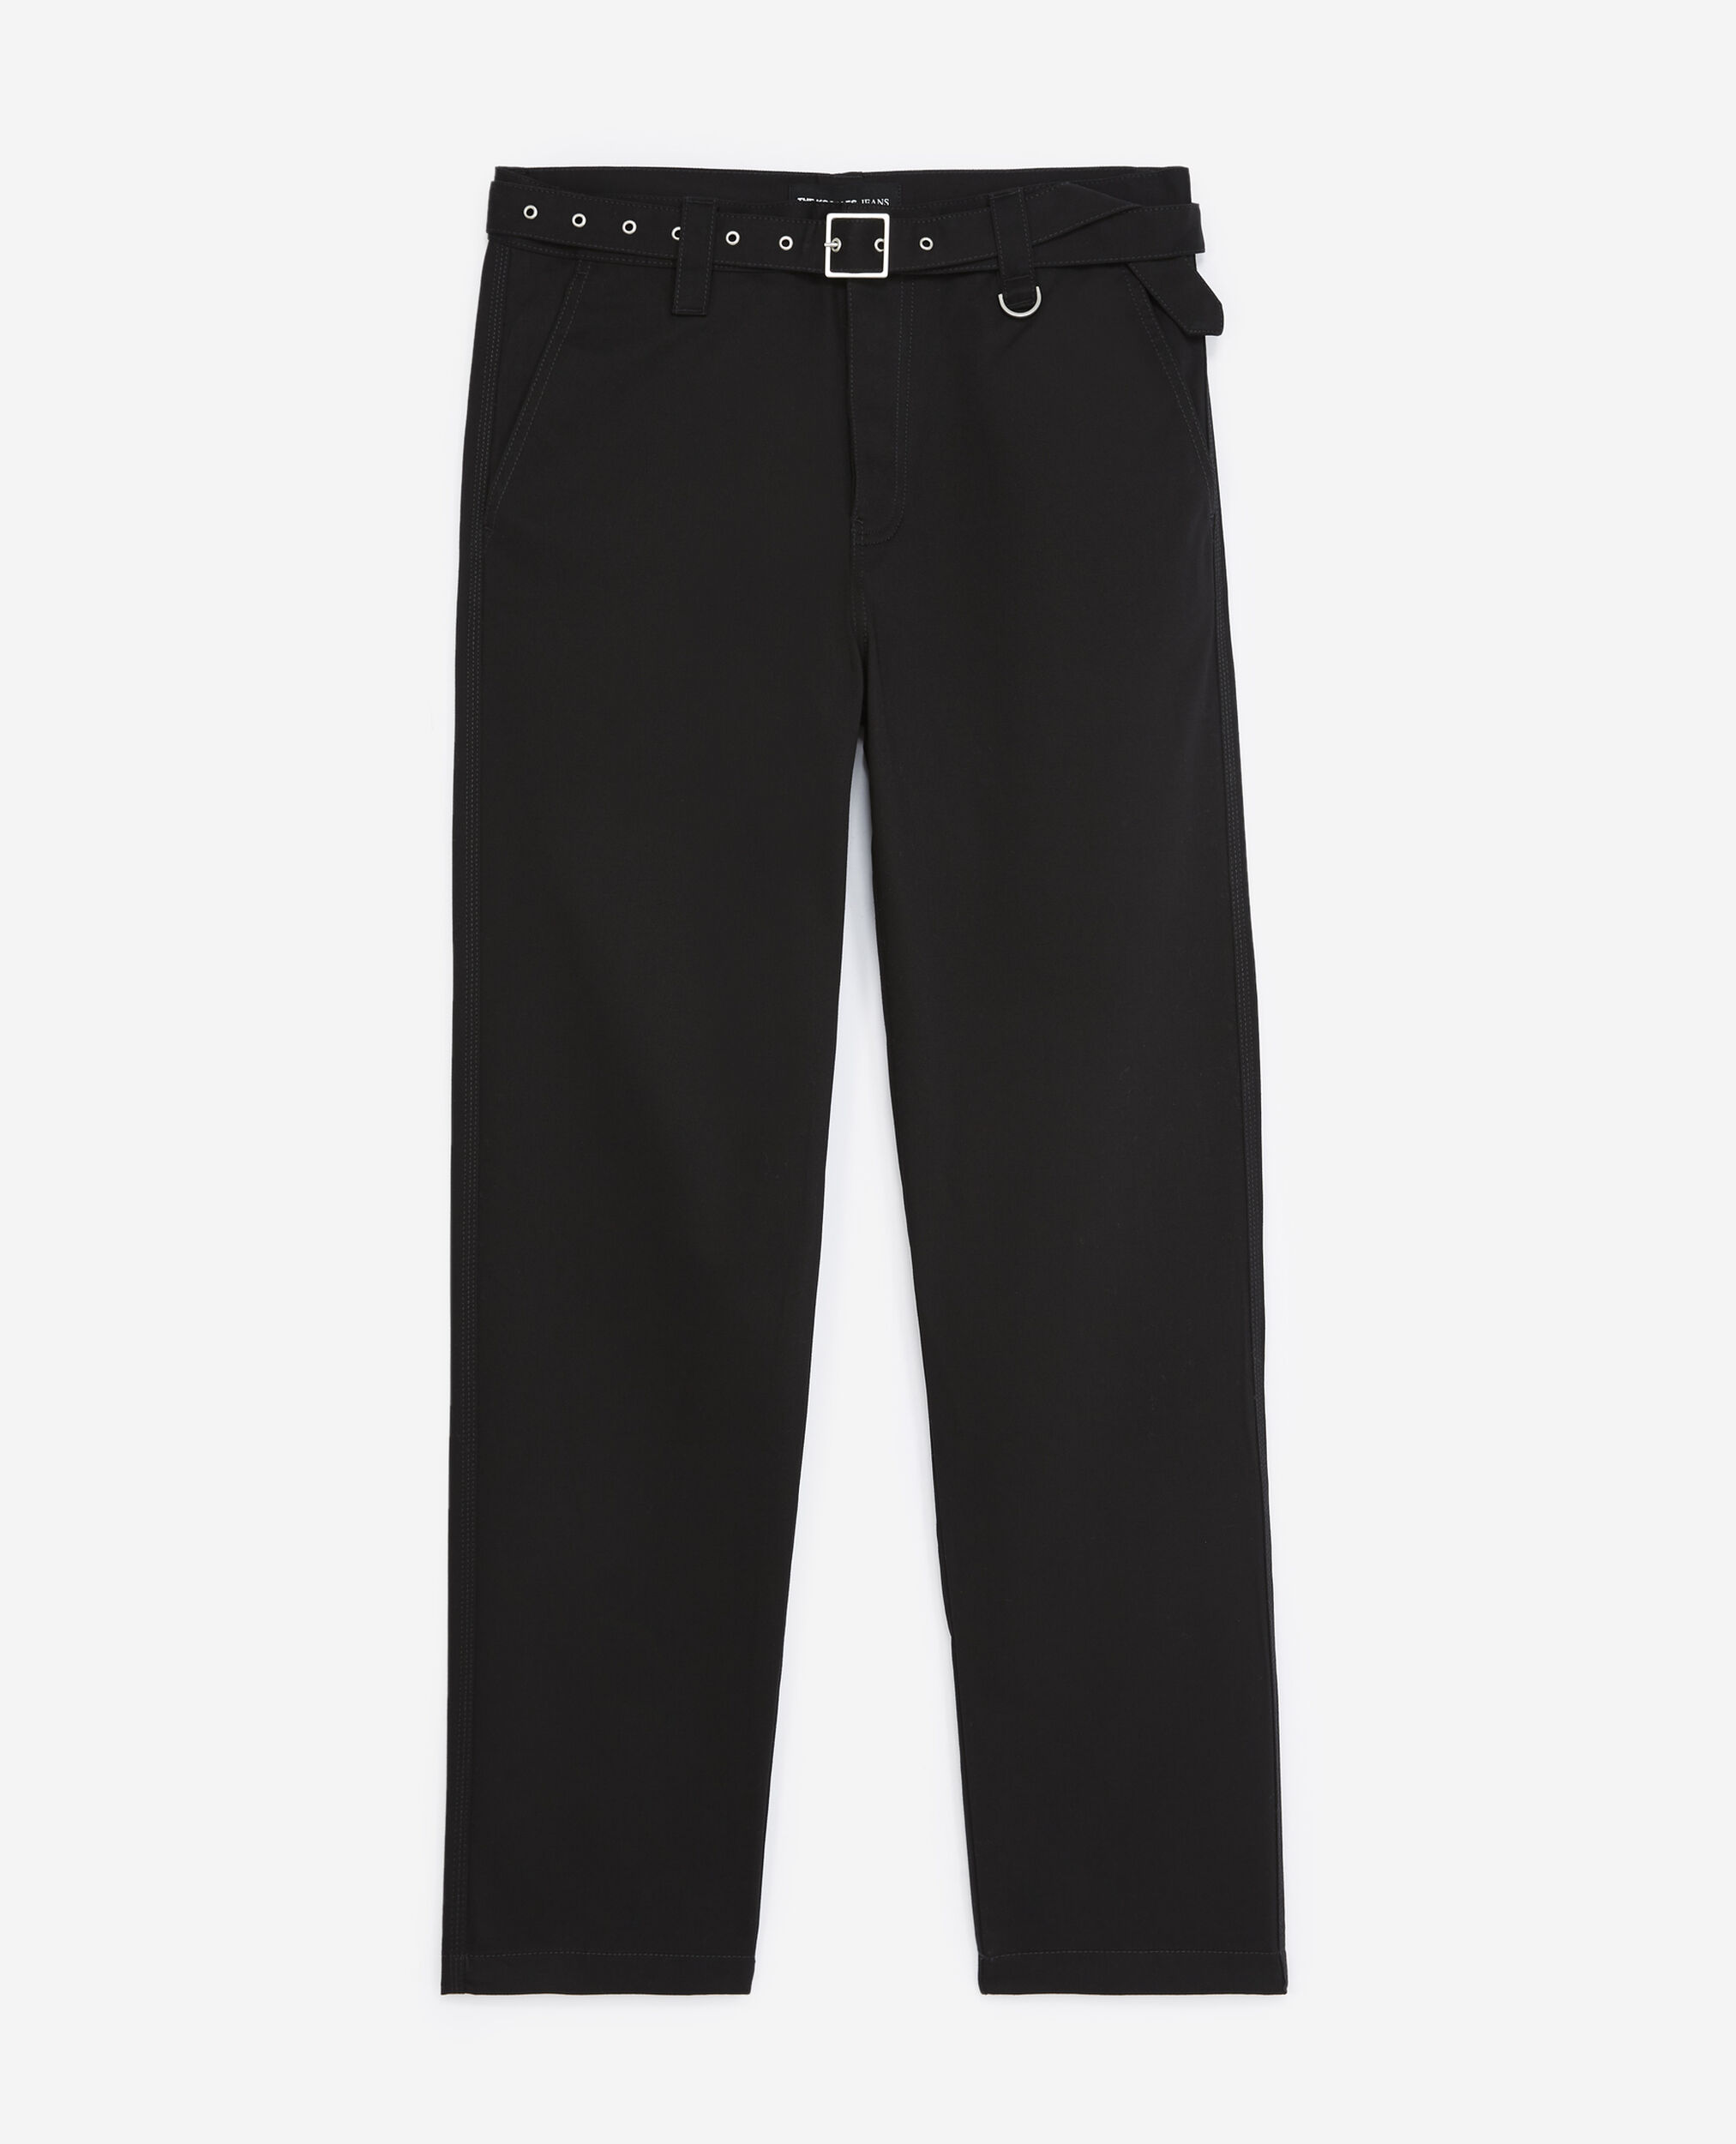 Pantalon droit noir à ceinture intégrée, BLACK, hi-res image number null